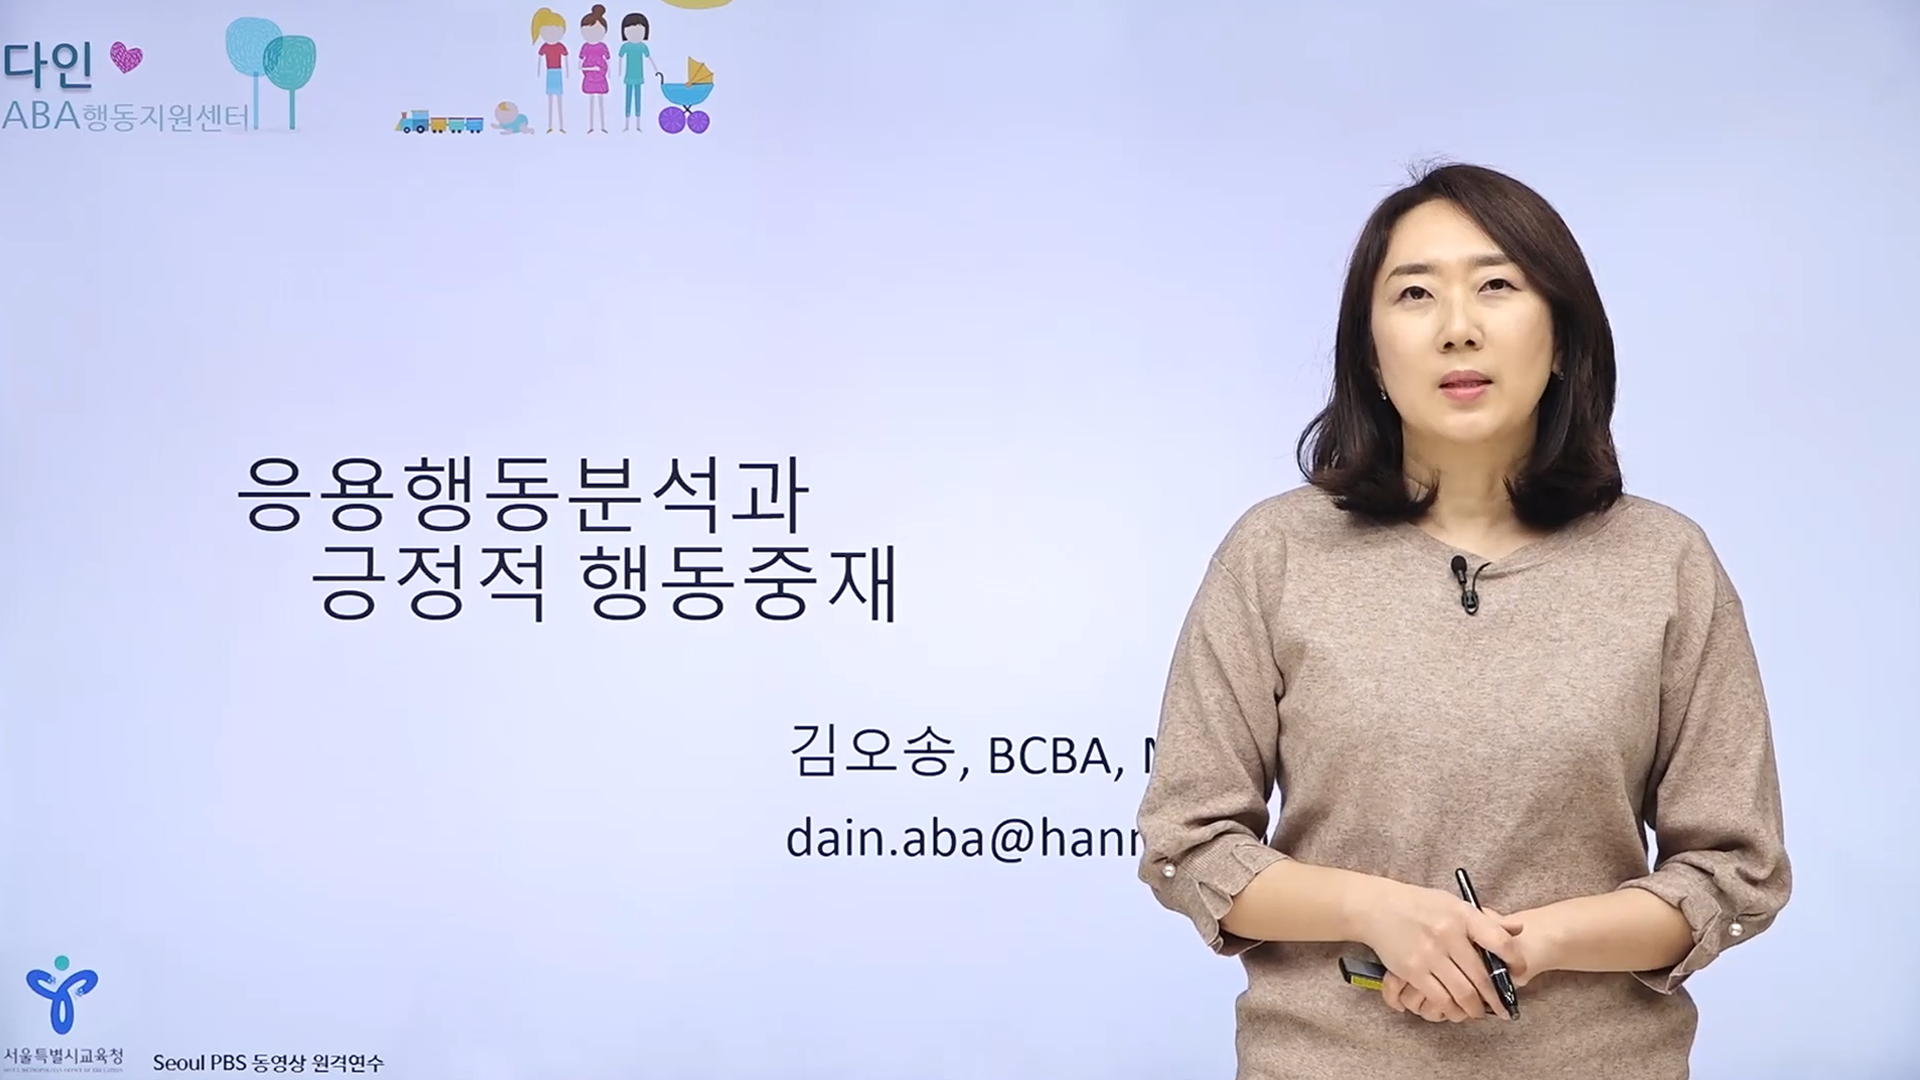 [Seoul PBS] [행동분석] 03 응용행동분석과 긍정적 행동지원